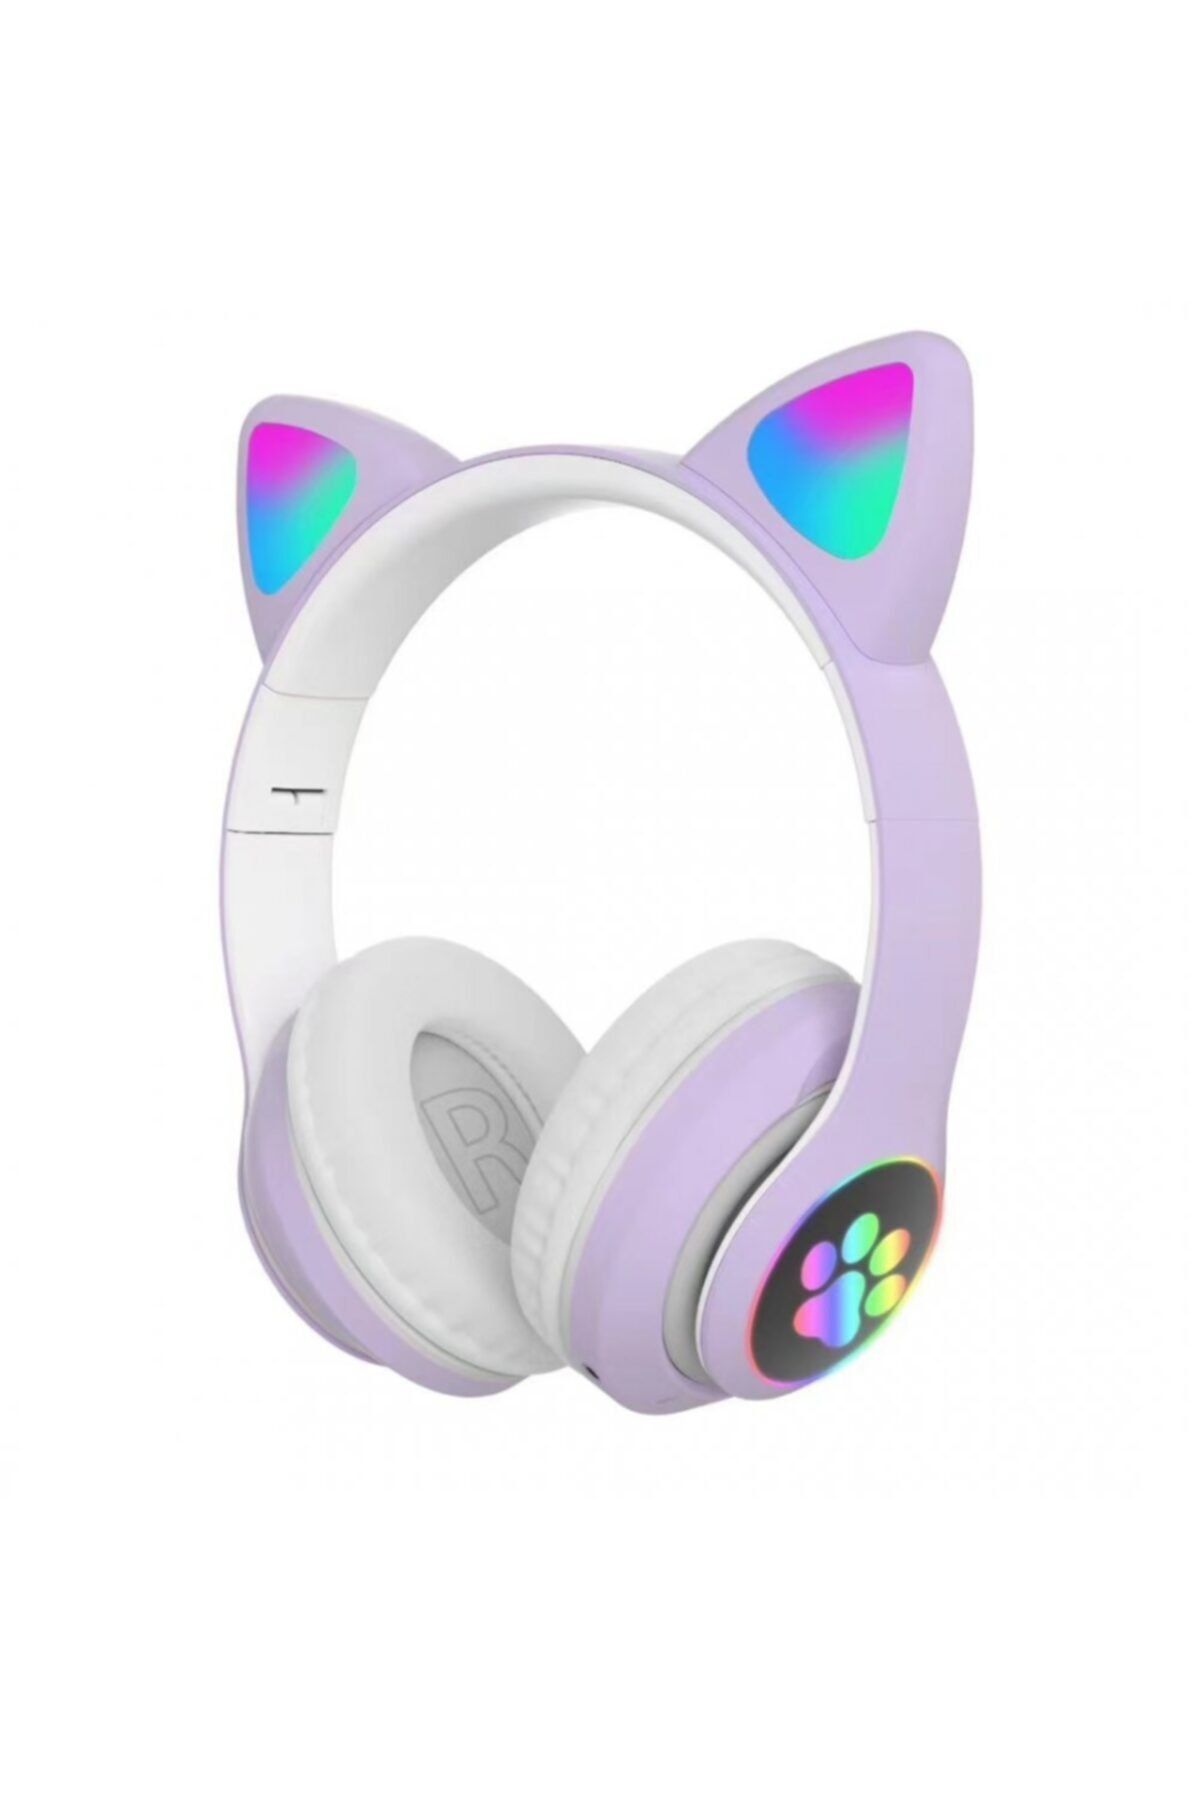 MOBAX Lila Bluetoothlu Işıklı Oyuncu Kulaklığı Eba Uzaktan Eğitim Çocuk Renkli Kulaklık 28